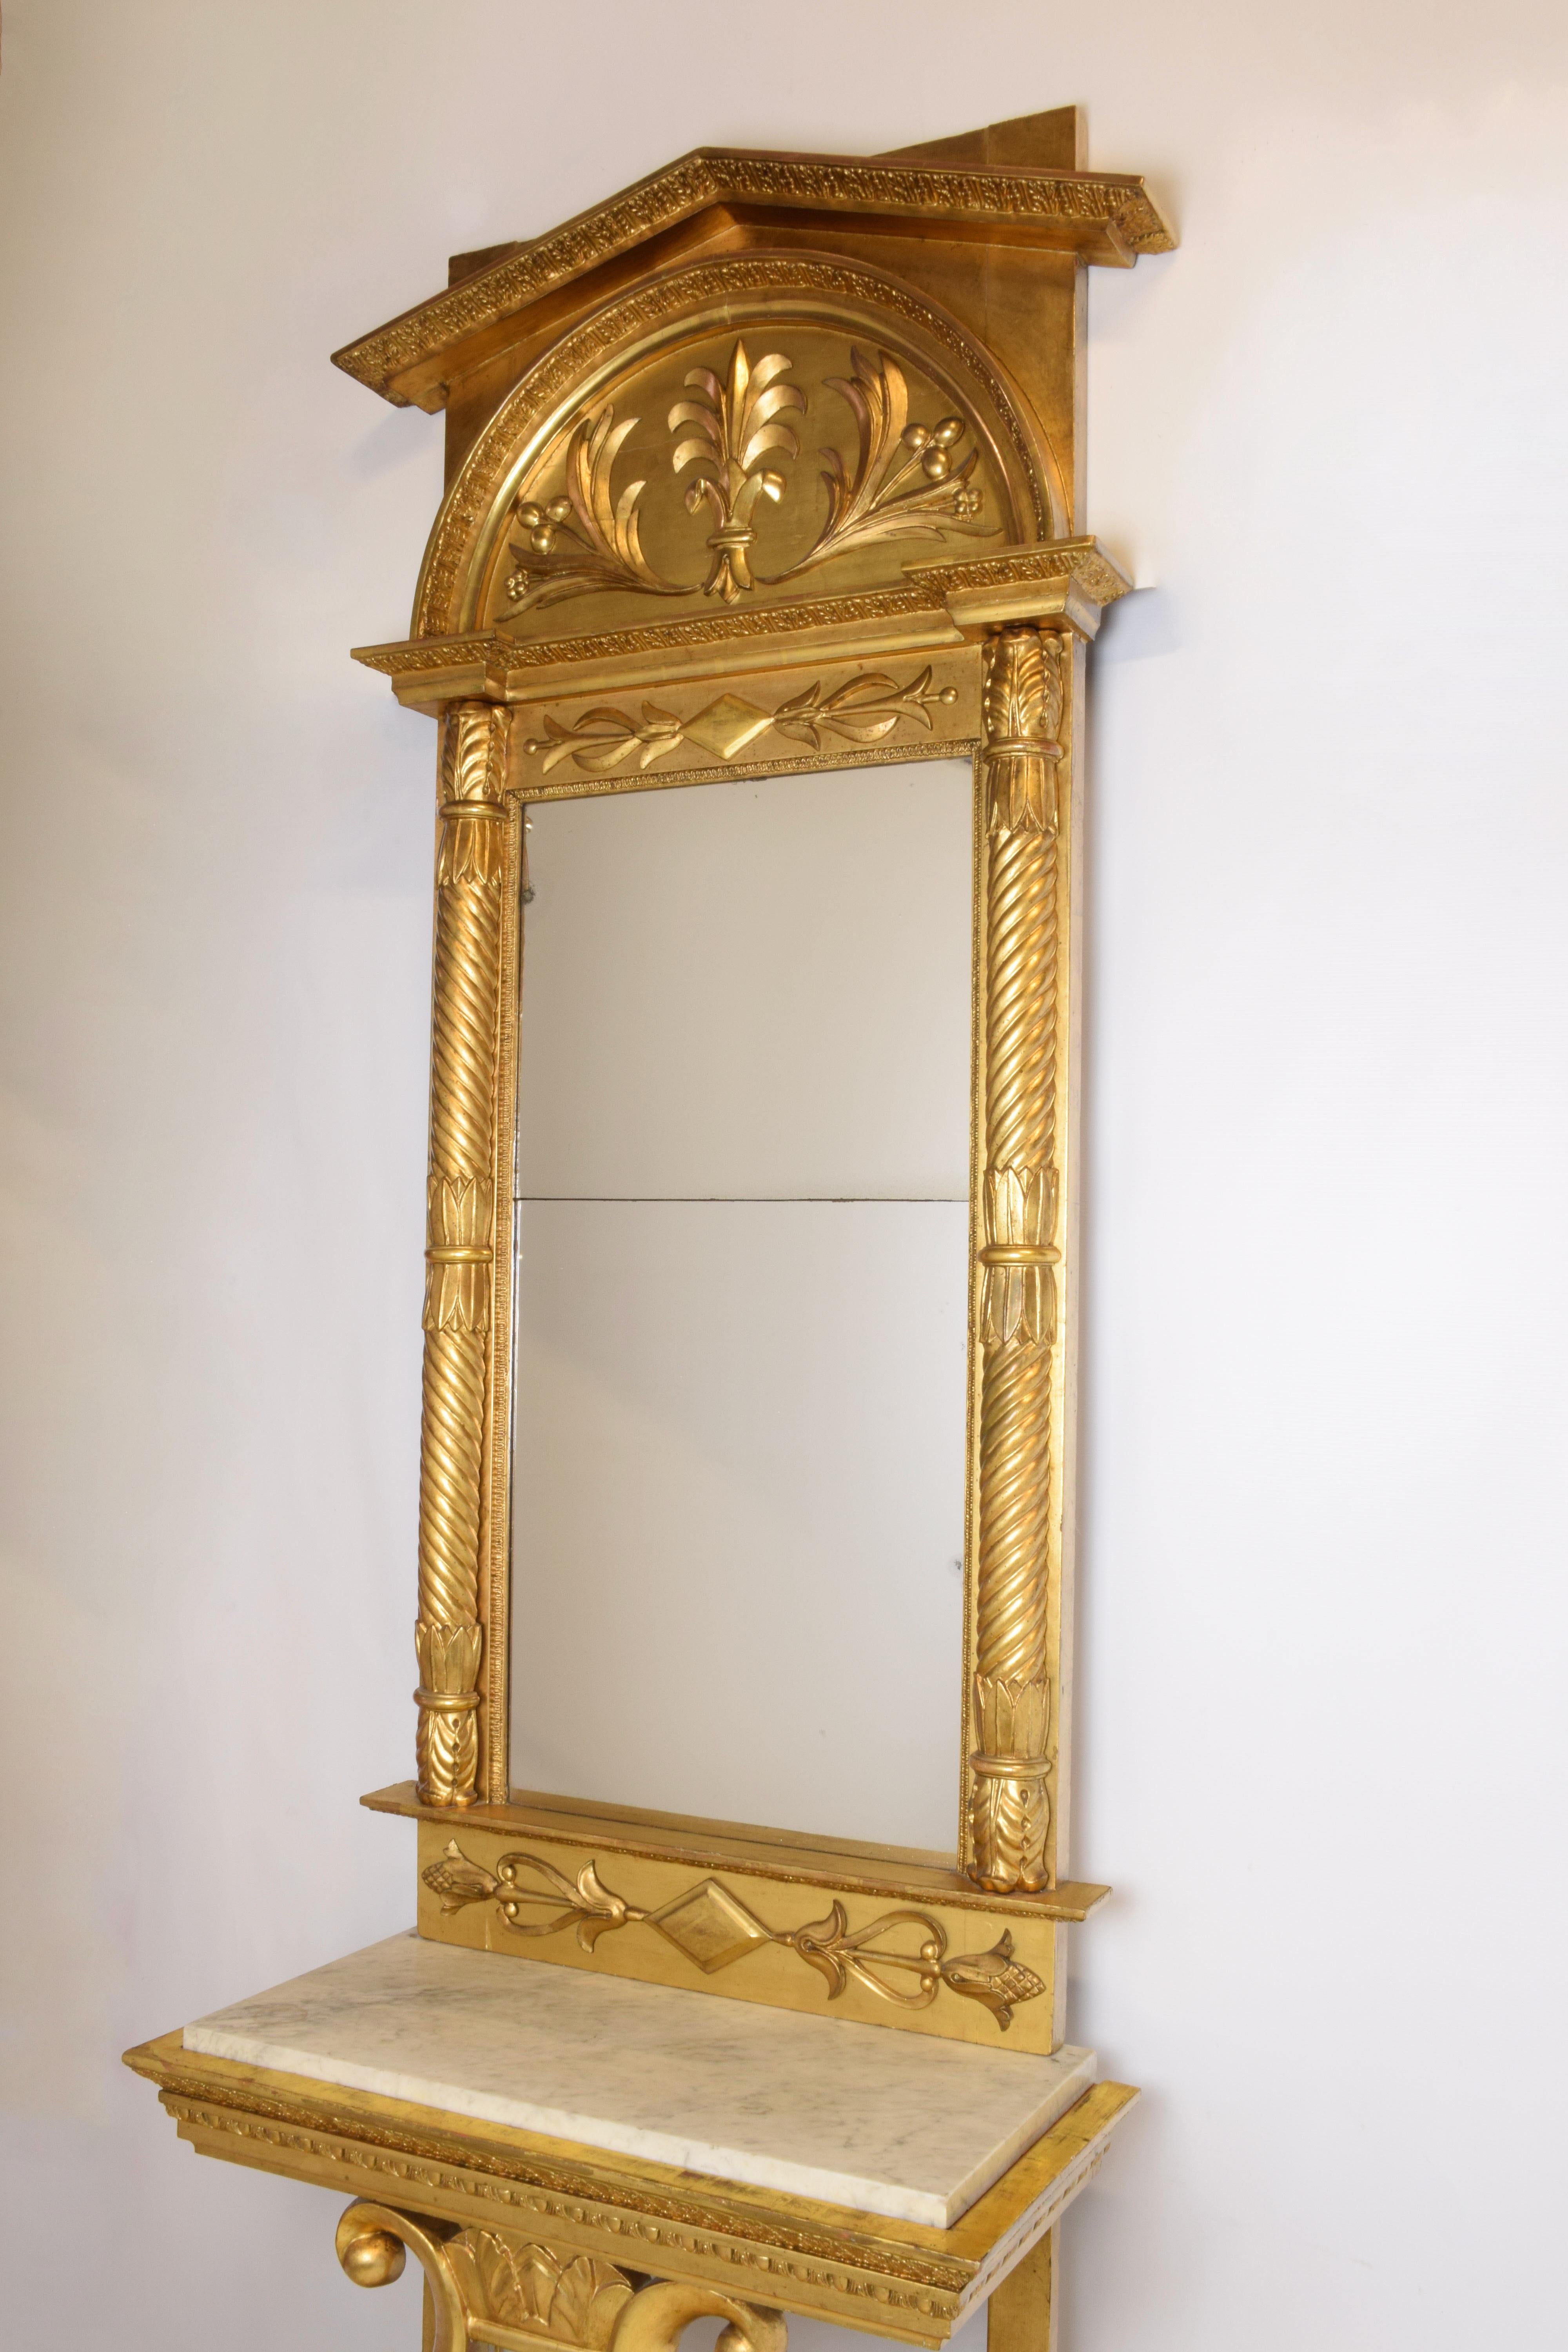 Vergoldeter Konsolentisch aus dem frühen 19. Jahrhundert mit einer Leier, die die weiße Marmorplatte trägt. Koordinierter Spiegel mit Dekoration. 
Authentischer Zustand, originaler Marmor, zweiteilige Spiegelplatte.
Holzsockel zur Nachahmung eines